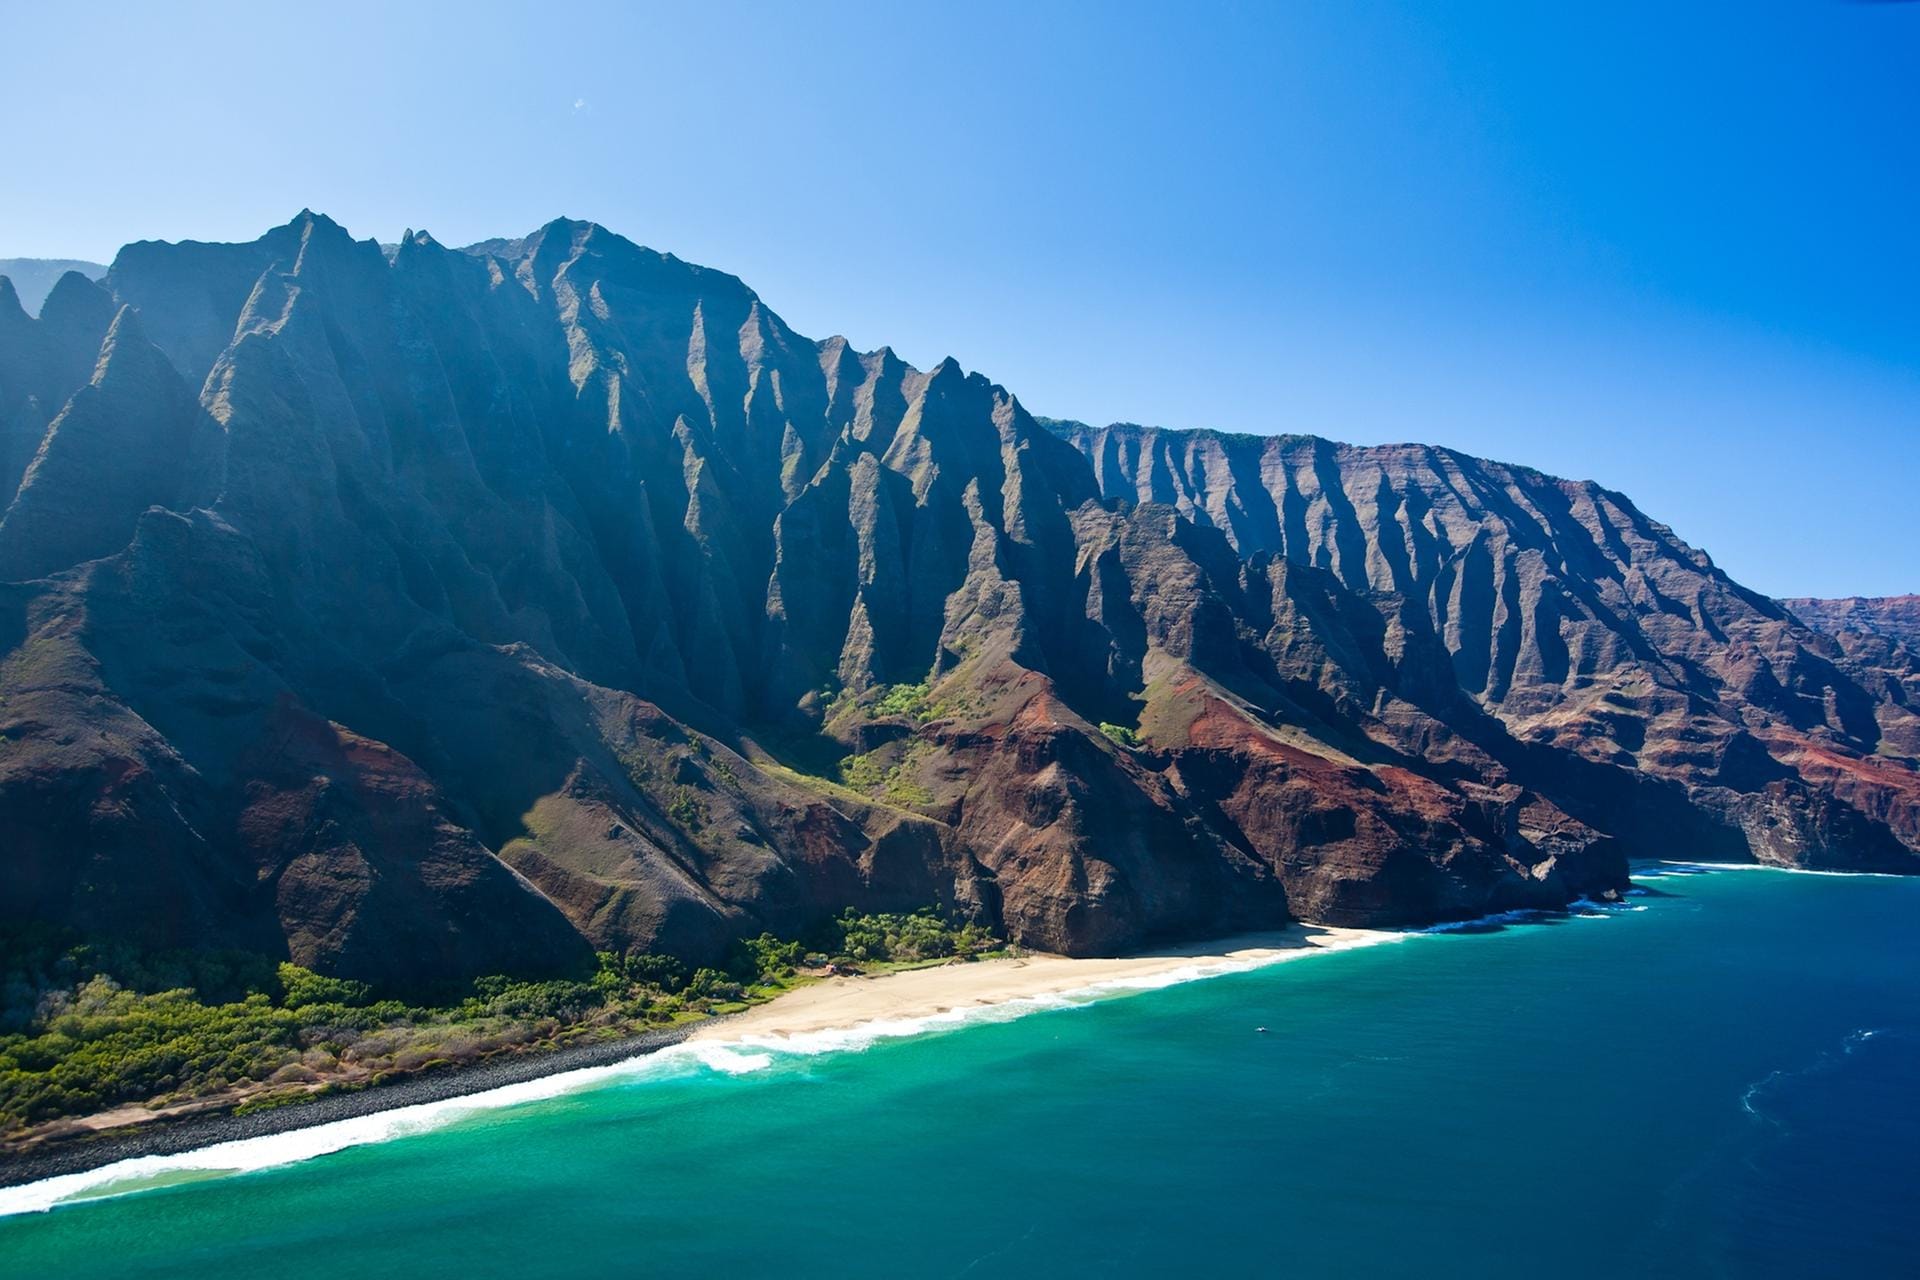 Sie gilt als die schönste und zugleich unzugänglichste Steilküste der Welt. Bis zu 1200 Meter ragen die smaragdgrün bewachsenen Klippen an der Westküste der Insel Kauai (Hawaii) in den Himmel.